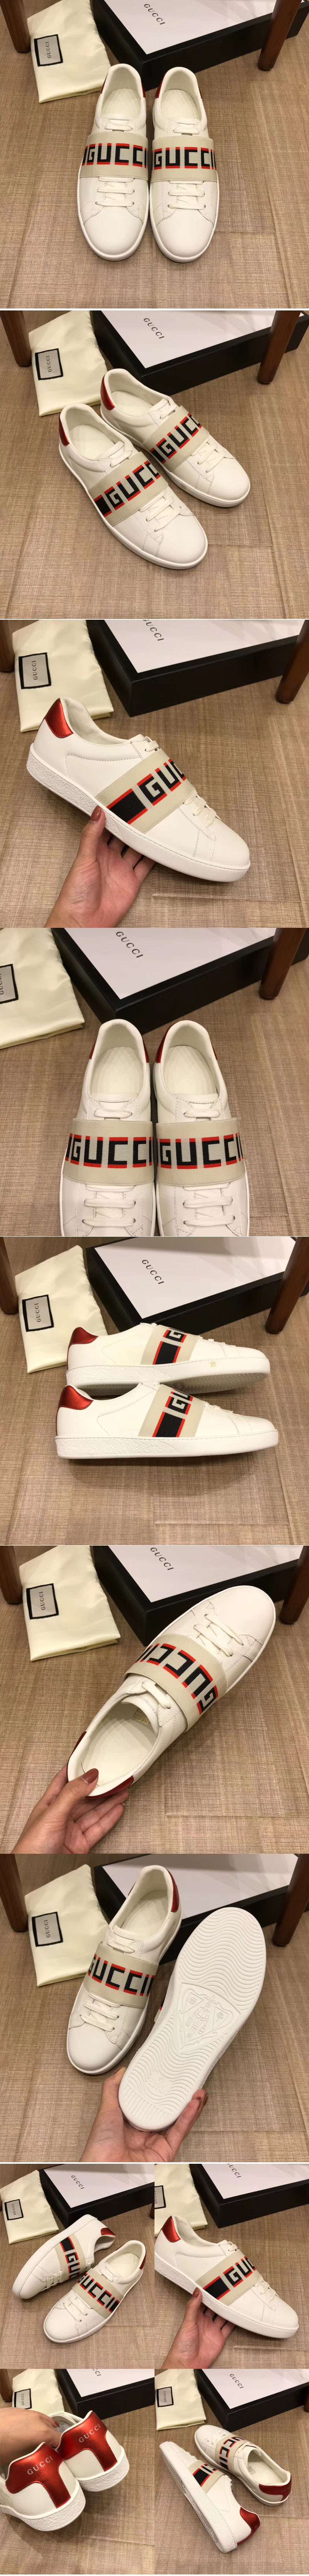 Replica Gucci Shoes